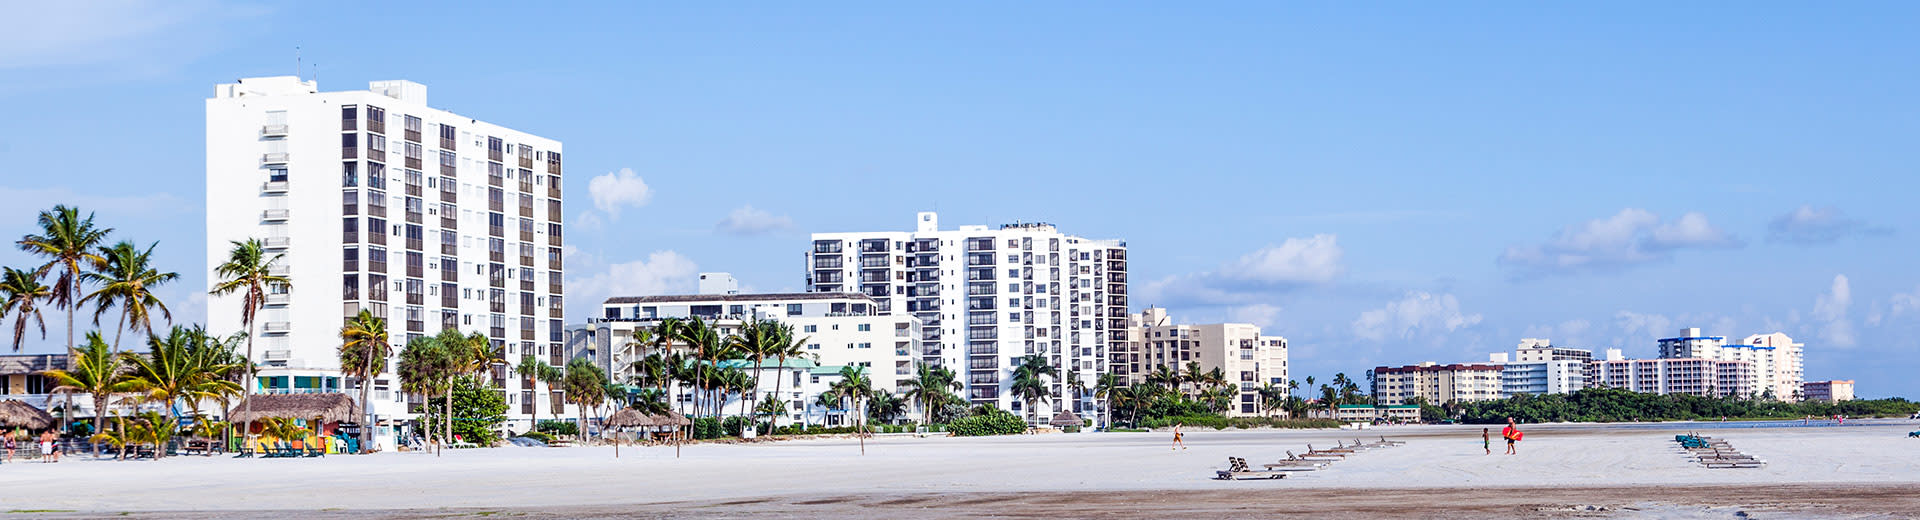 Los hoteles de gran altura dan a una playa en Fort Myers en un hermoso día de verano.